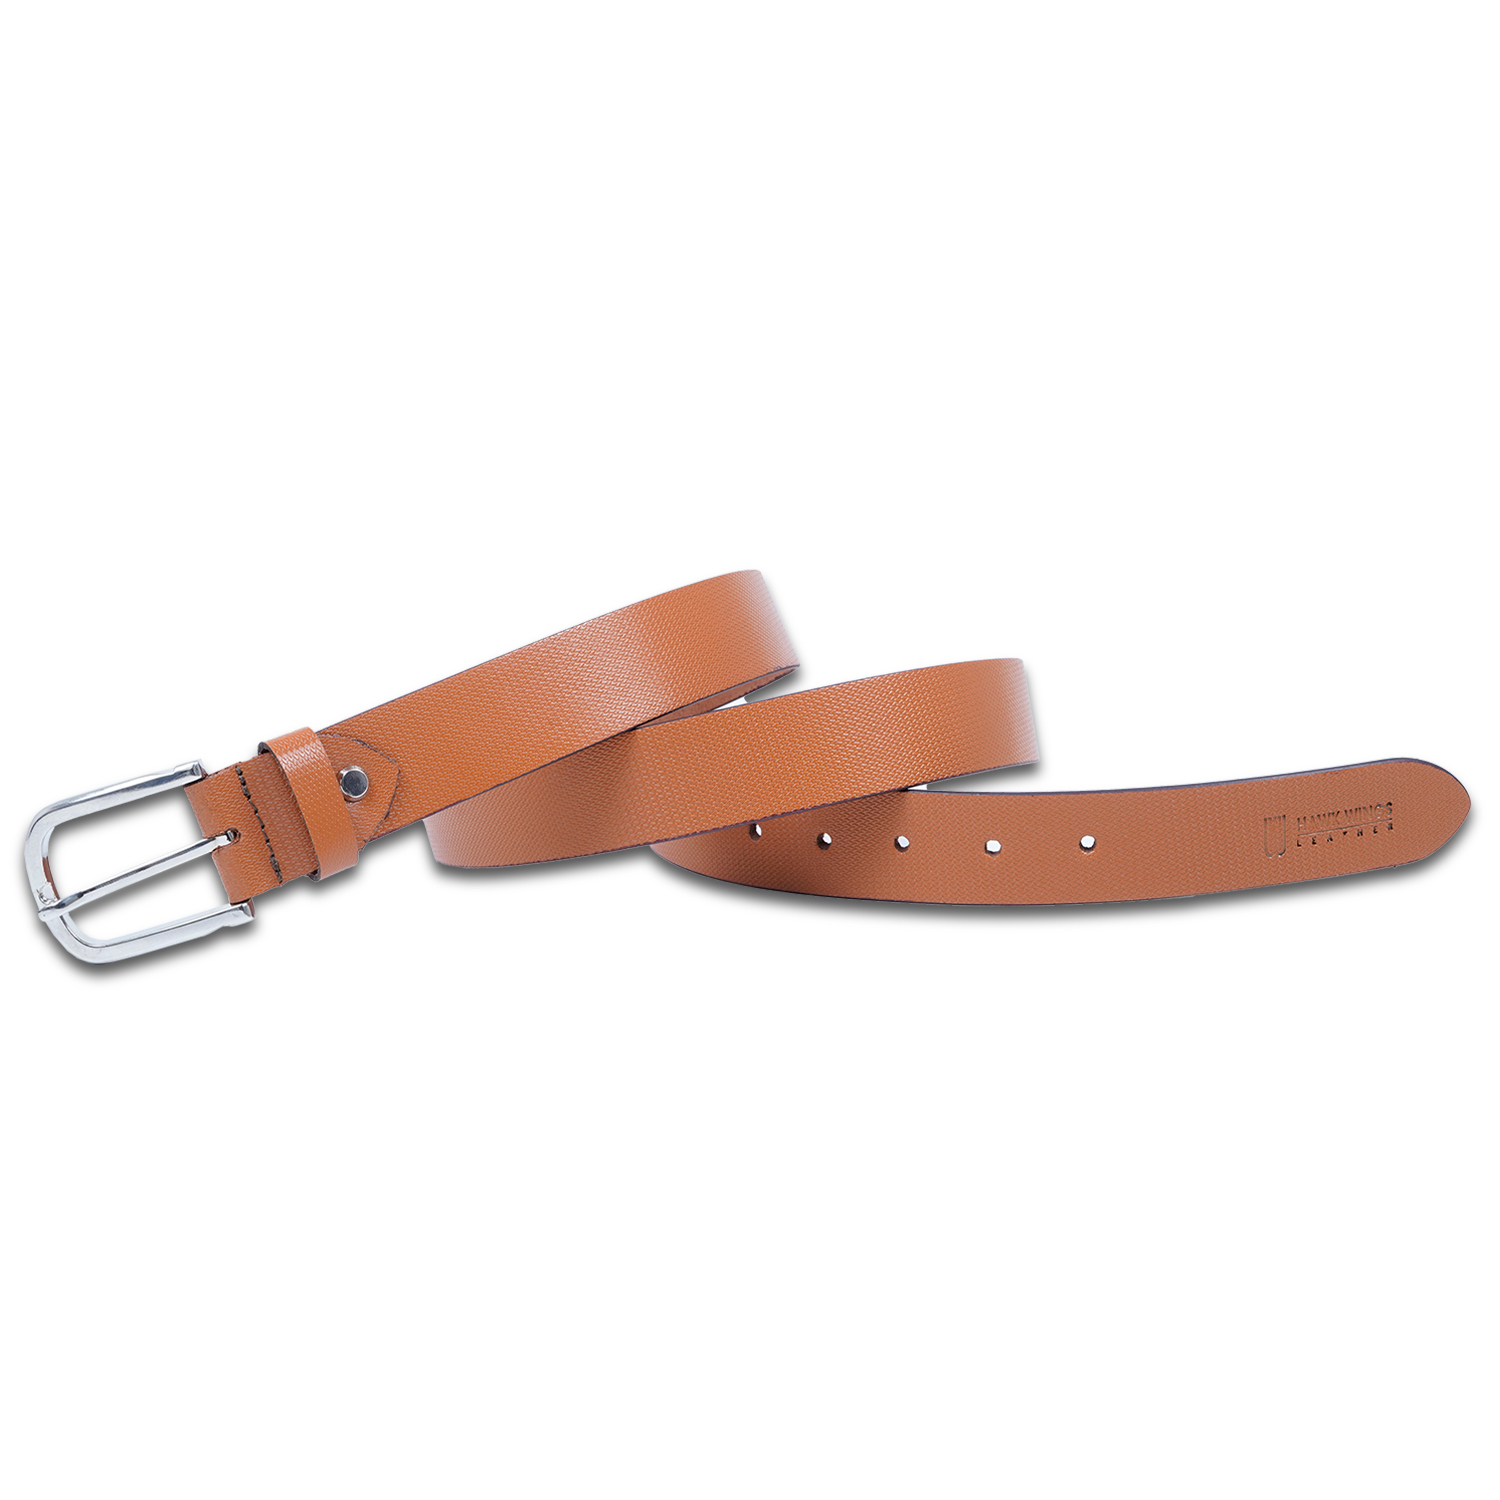  Genuine Leather Belt For Men's| Tan| Formal Belt-asset-282